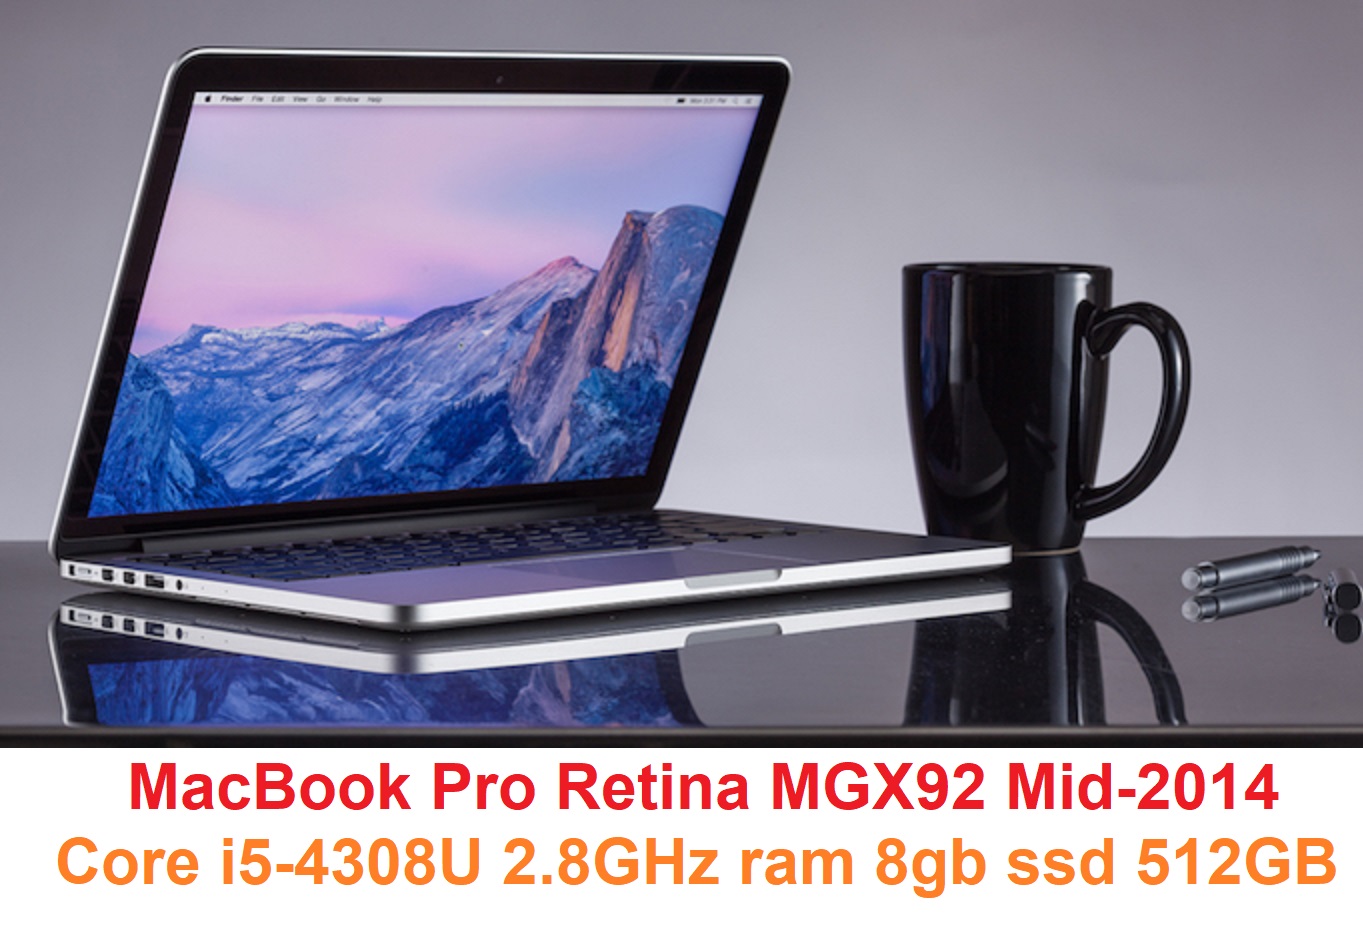 MacBook Pro Retina MGX92 Mid-2014 Core i5-4308U 2.8GHz ram 8gb ssd 512GB.